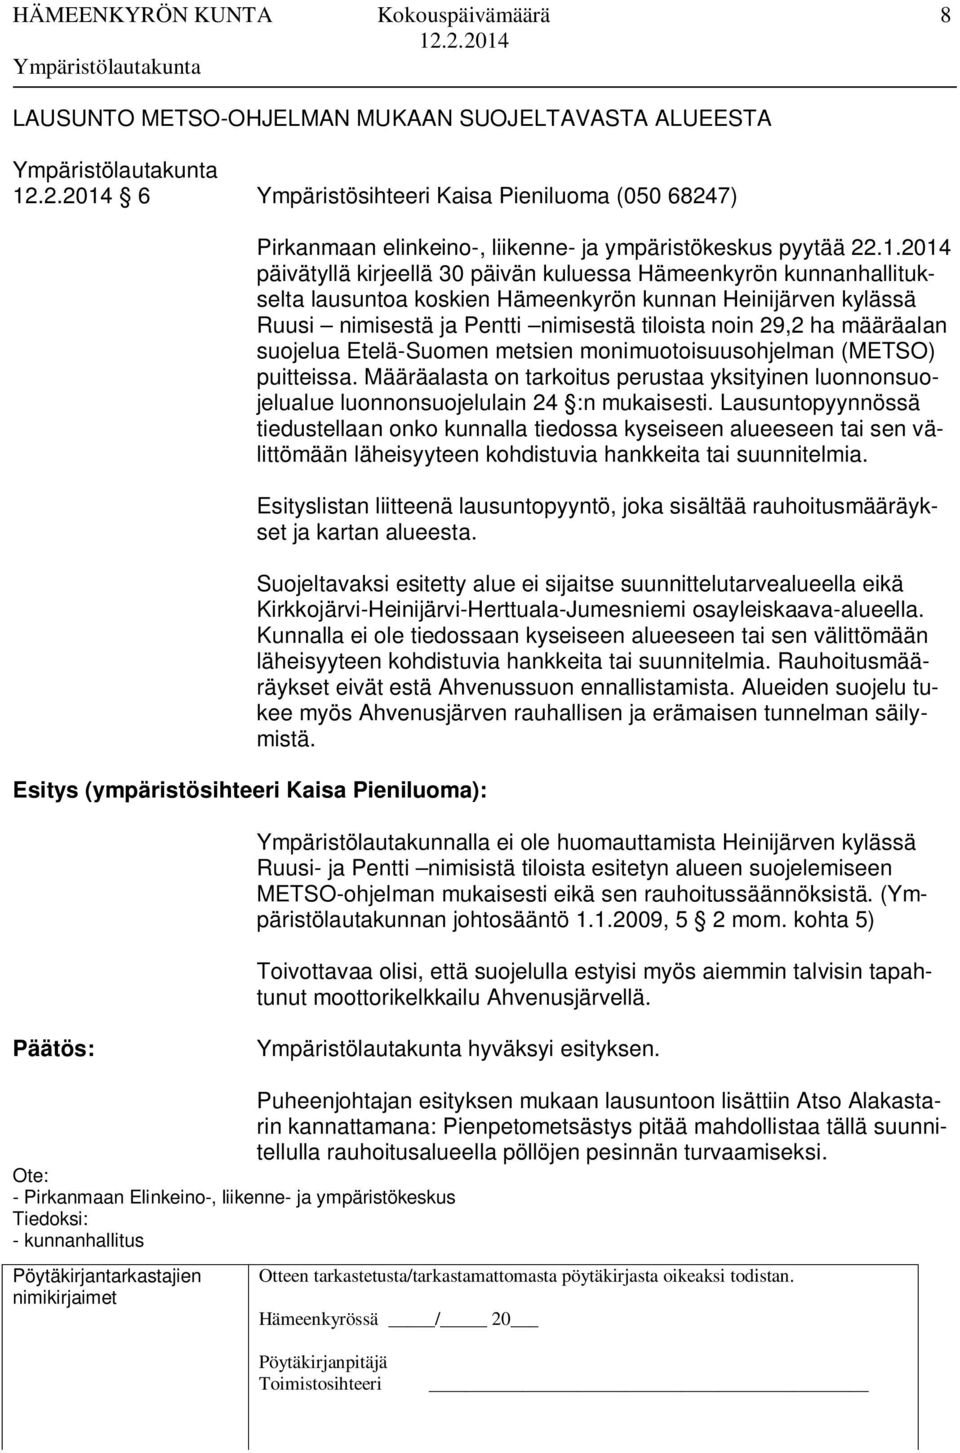 2014 päivätyllä kirjeellä 30 päivän kuluessa Hämeenkyrön kunnanhallitukselta lausuntoa koskien Hämeenkyrön kunnan Heinijärven kylässä Ruusi nimisestä ja Pentti nimisestä tiloista noin 29,2 ha